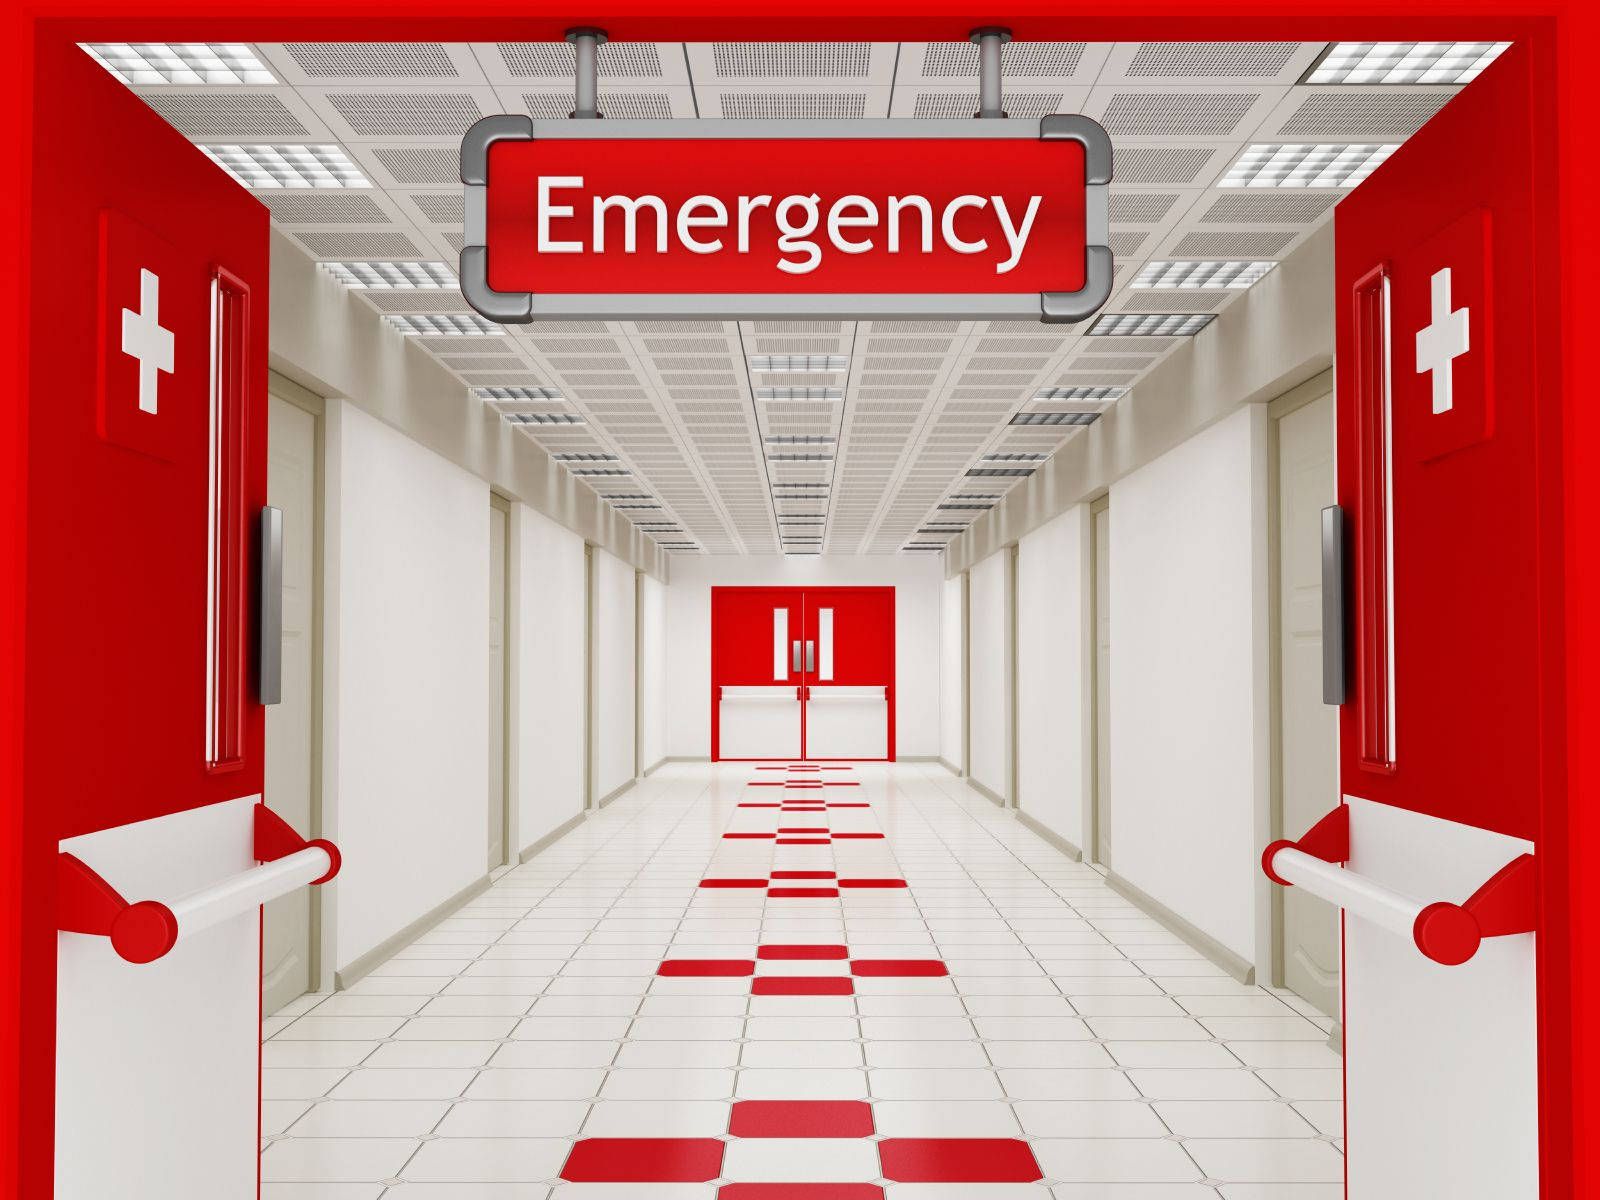 Emergenciadel Hospital Rojo Y Blanco Fondo de pantalla